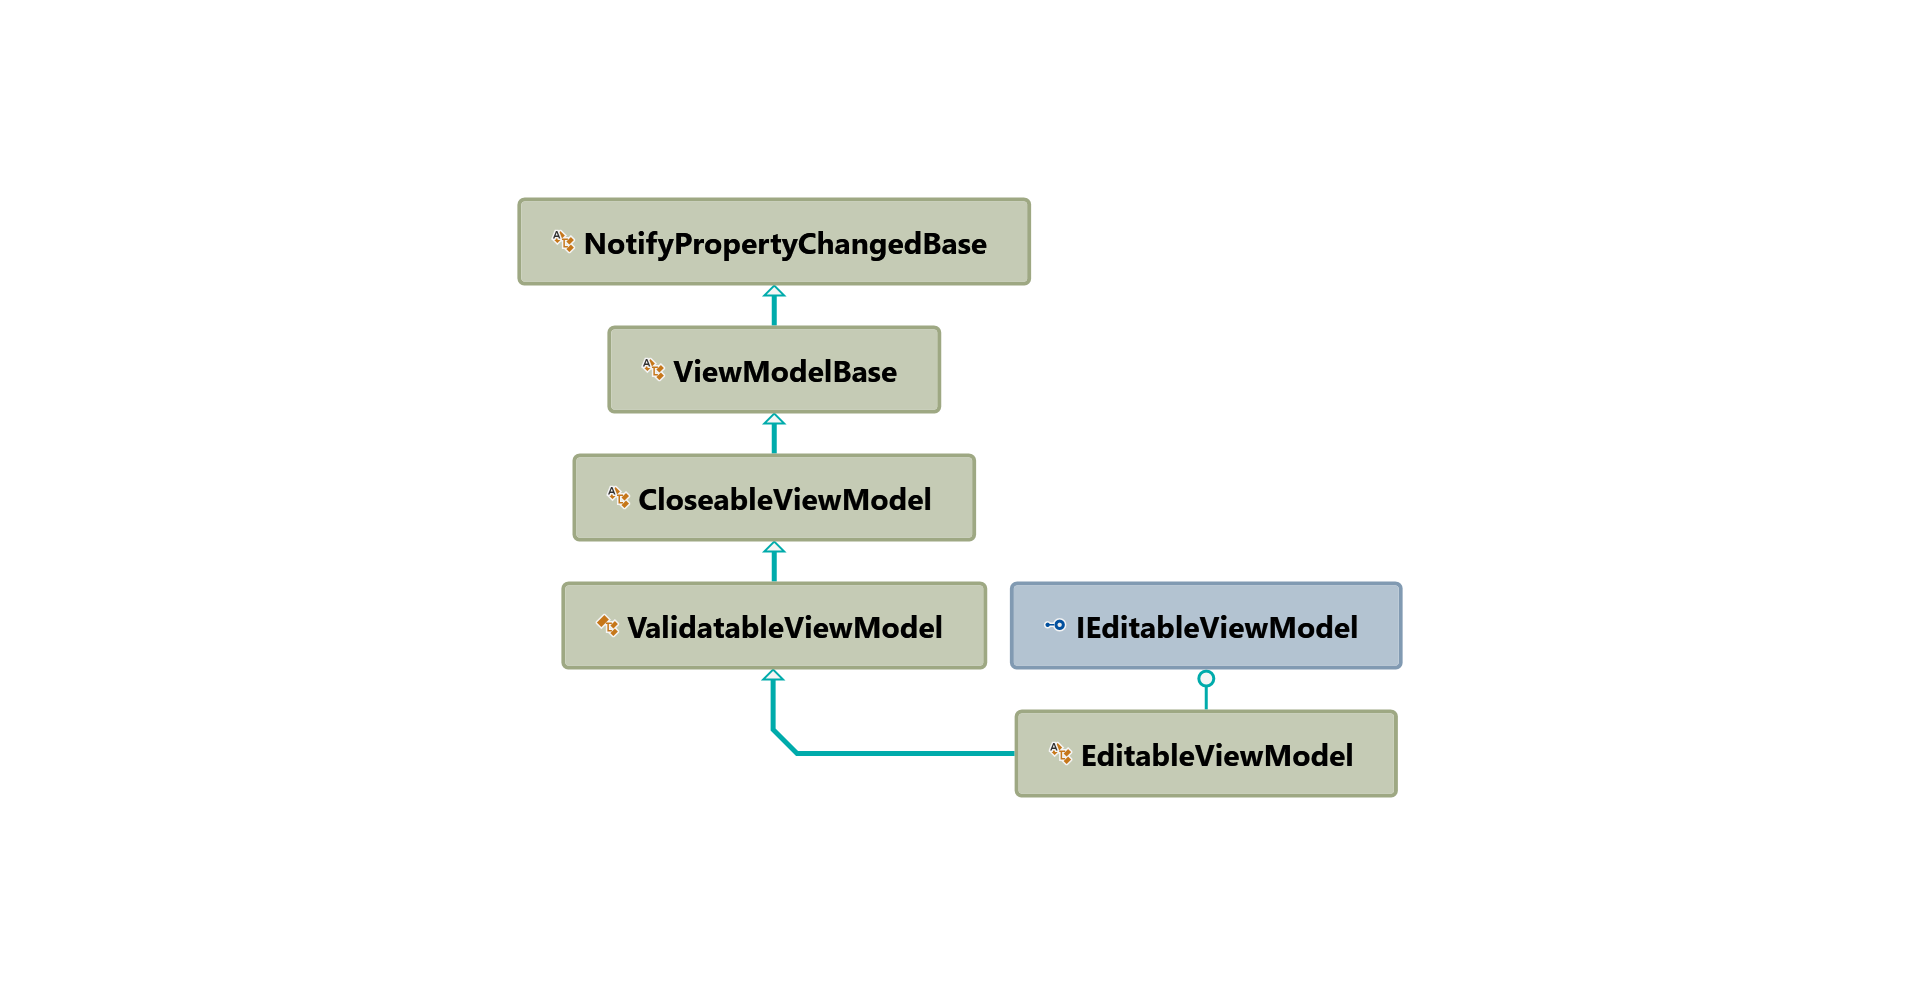 EditableViewModel hierarchy